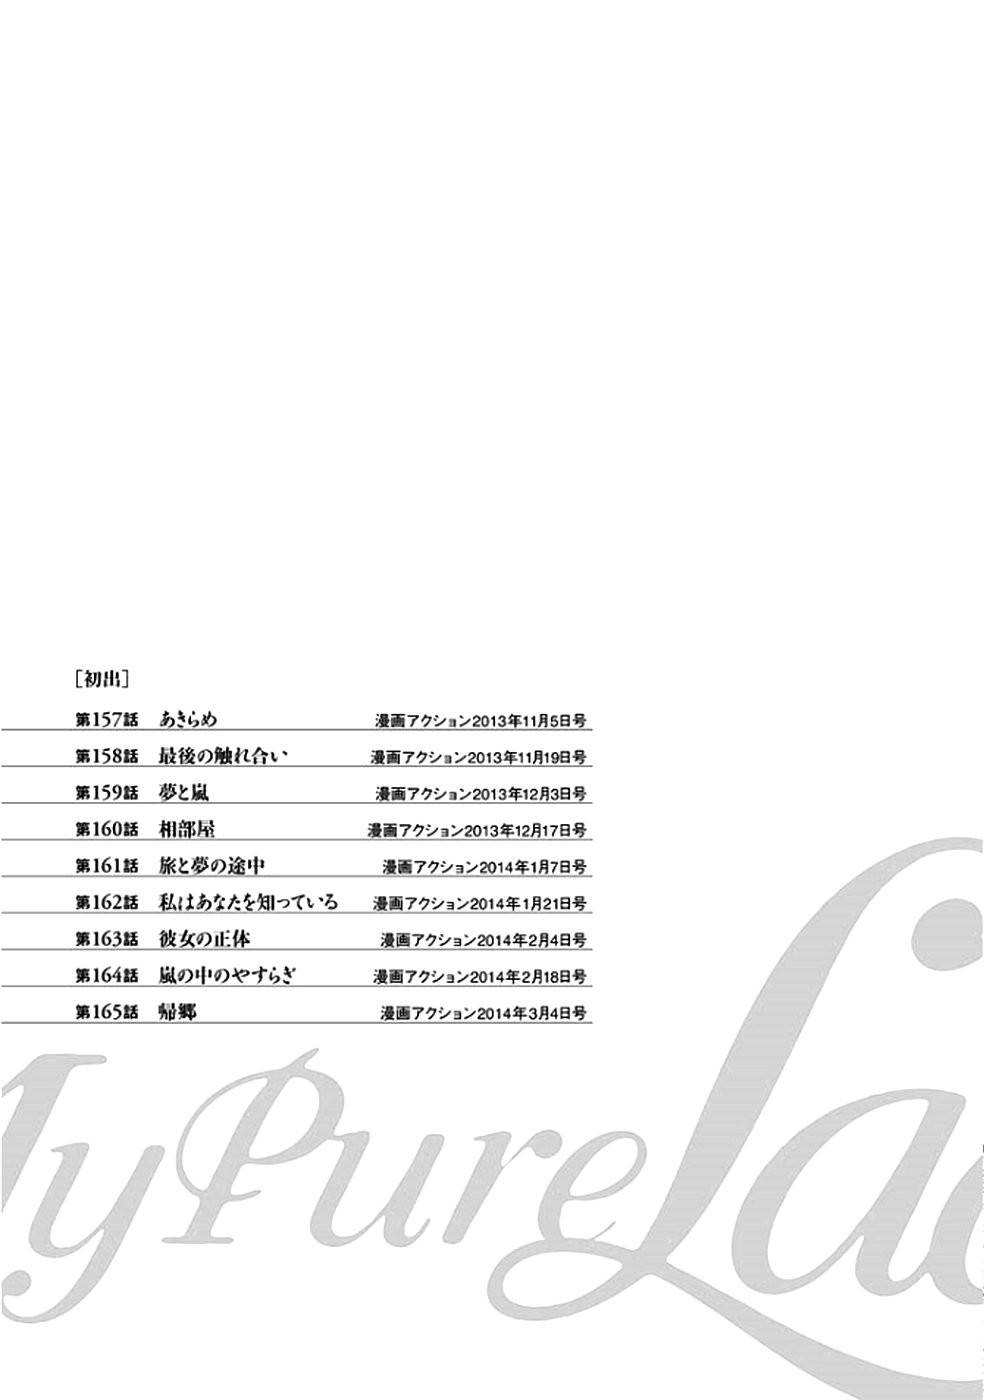 [Tomisawa Chinatsu, Hazuki Kaoru] Onegai Suppleman My Pure Lady 18 [Digital] [とみさわ千夏, 八月薫] お願いサプリマンMy Pure Lady 18 [DL版]